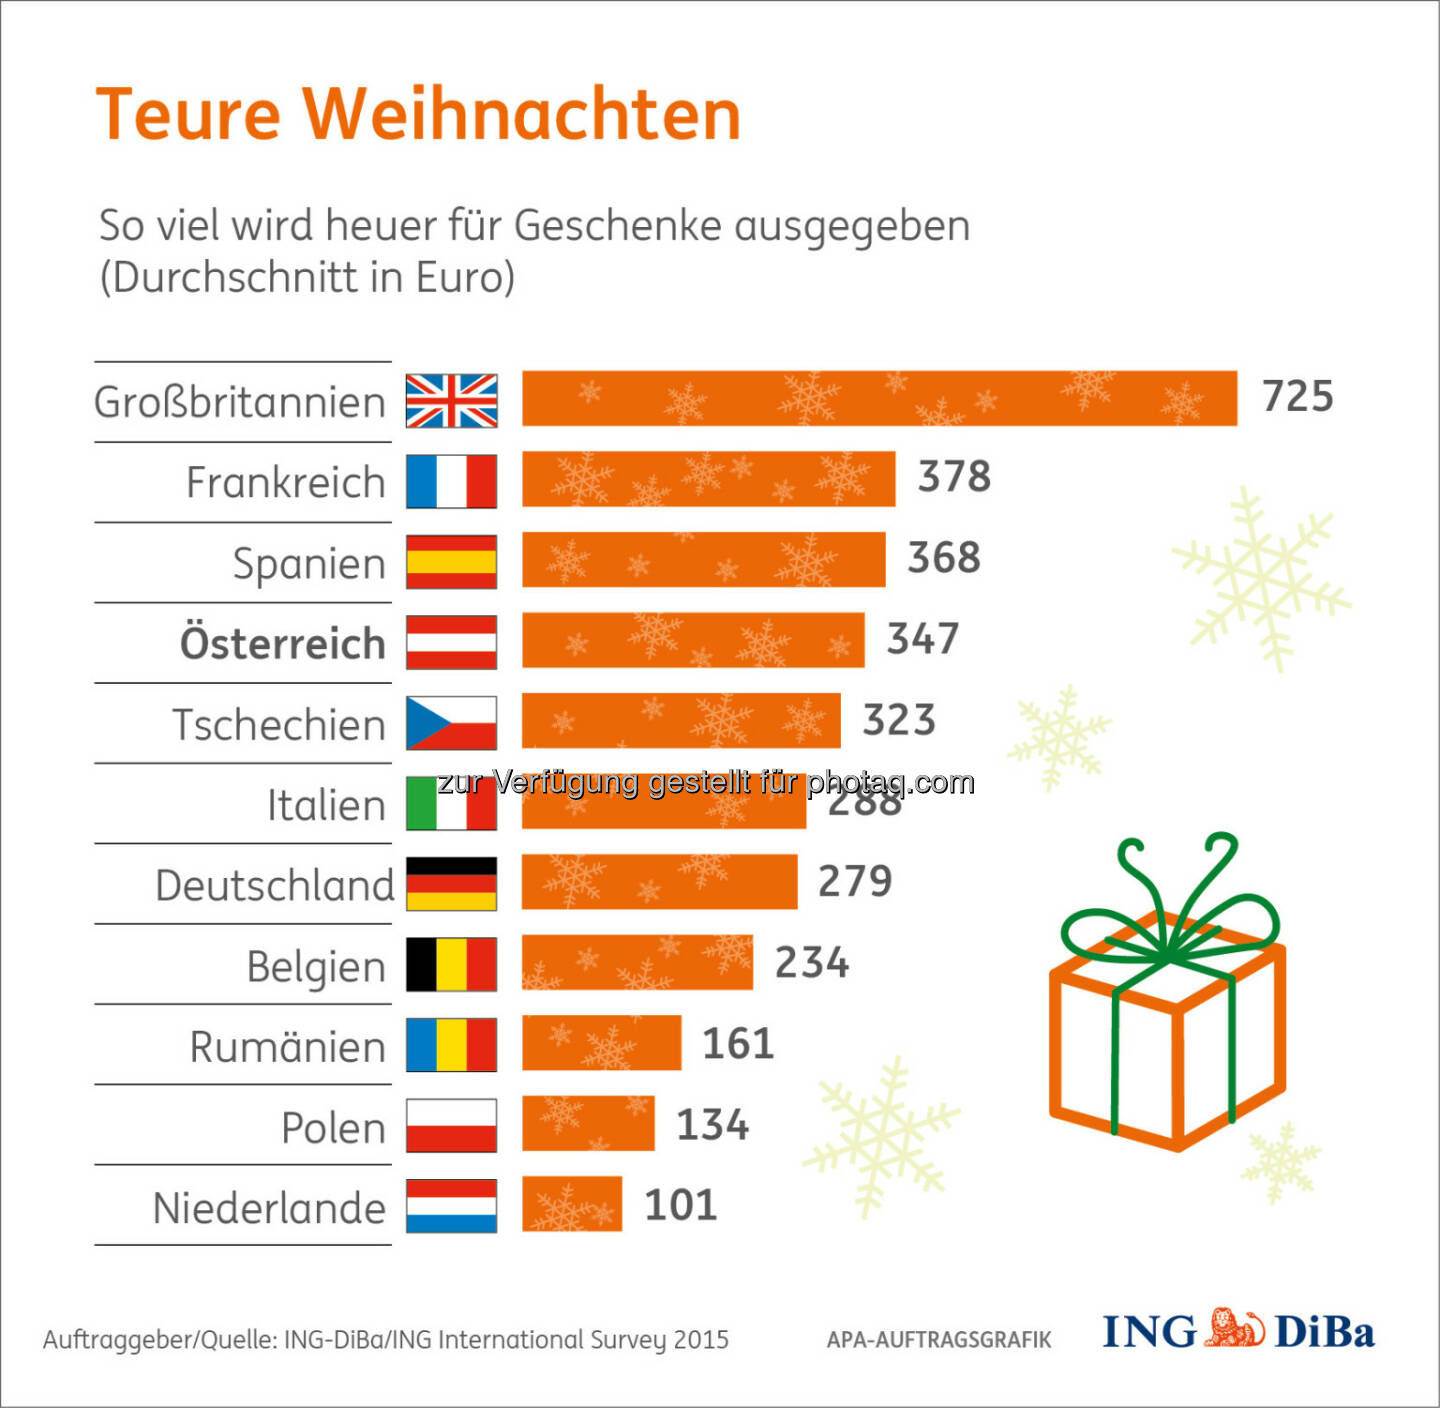 Teure Weihnachten : Weihnachtsumfrage im Auftrag der ING-DiBa : Bei den Weihnachtsgeschenken zeigen sich die Österreicher 2015 recht spendabel : Fotocredit: ING-DiBa/ING International Survey 2015